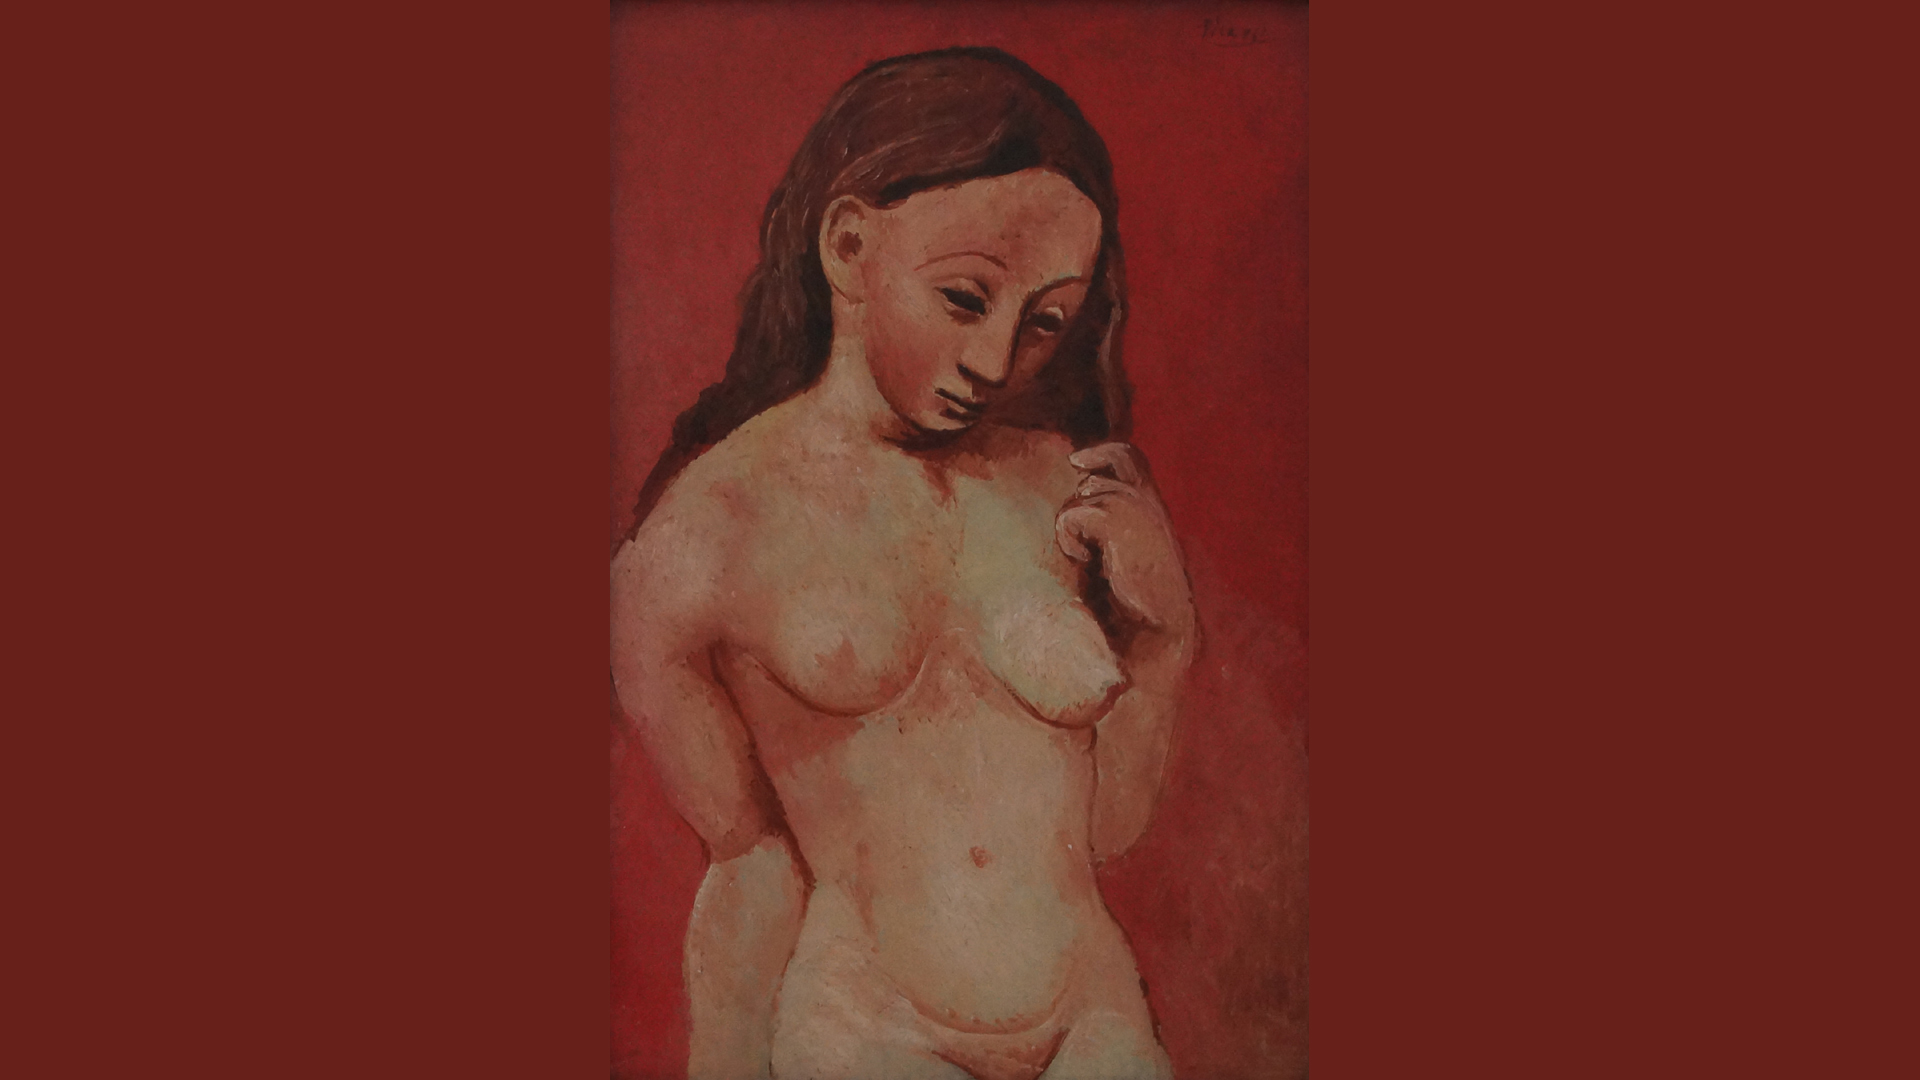 Fotostrecke Picasso 09: Akt auf rotem Grund bzw. Akt einer jungen Frau mit offenem Haar (1906)